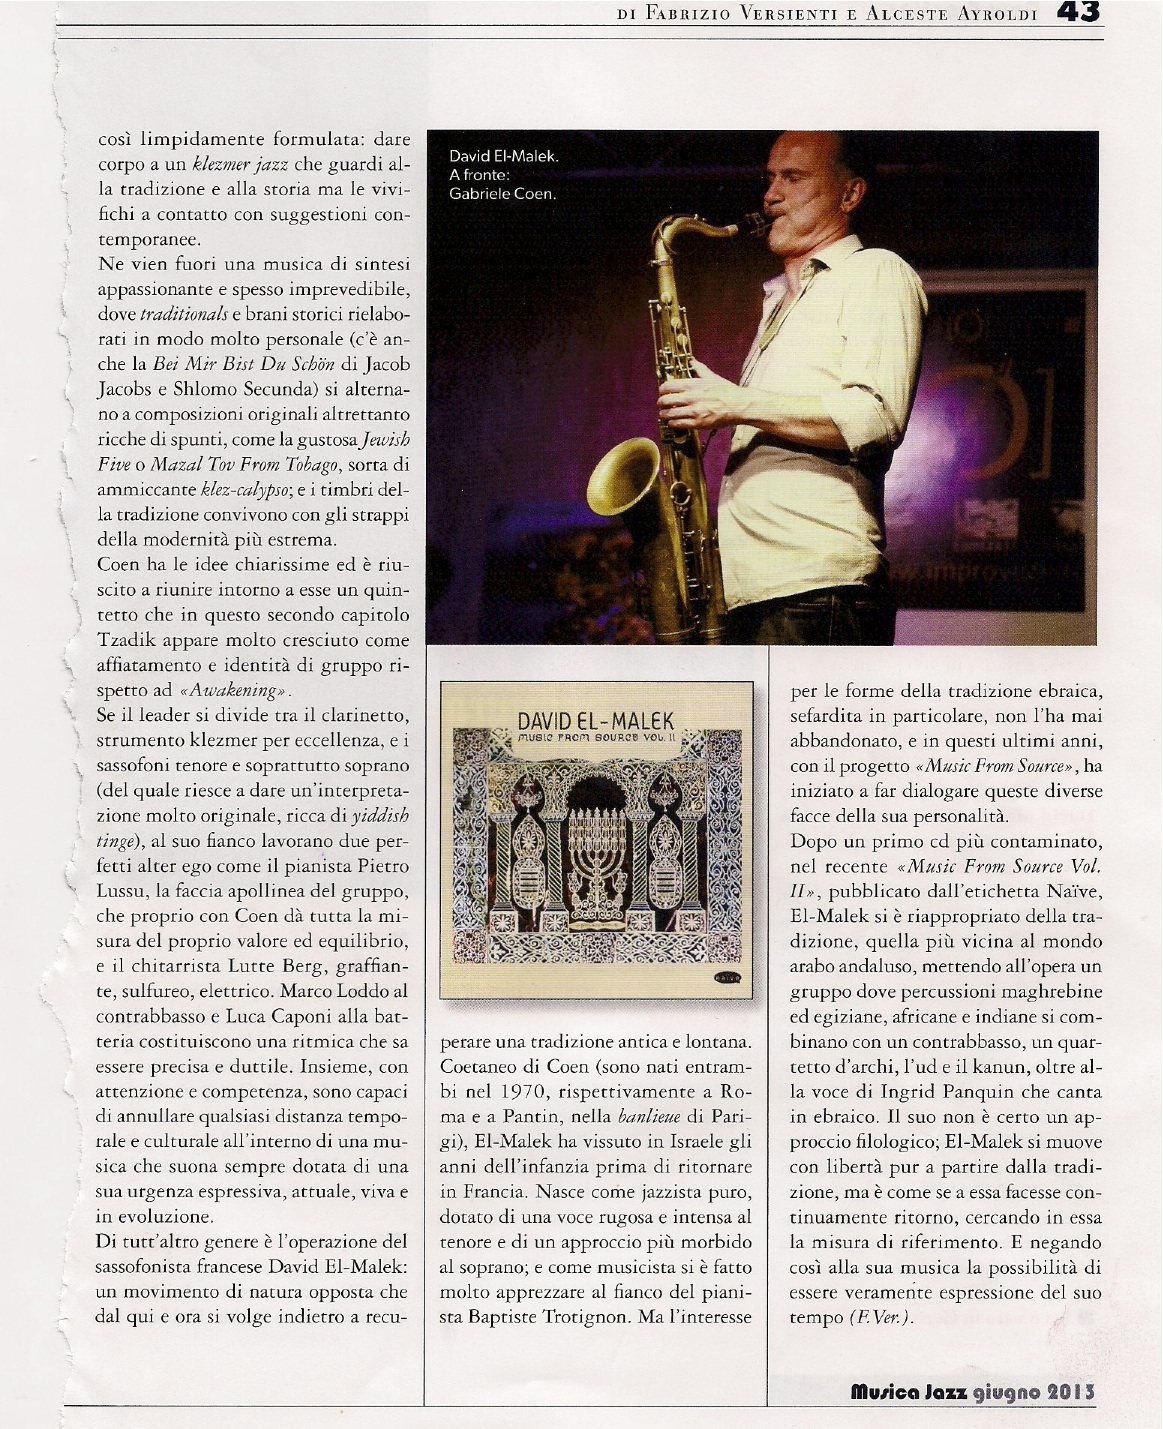 articolo musica jazz giugno 2013 p.2